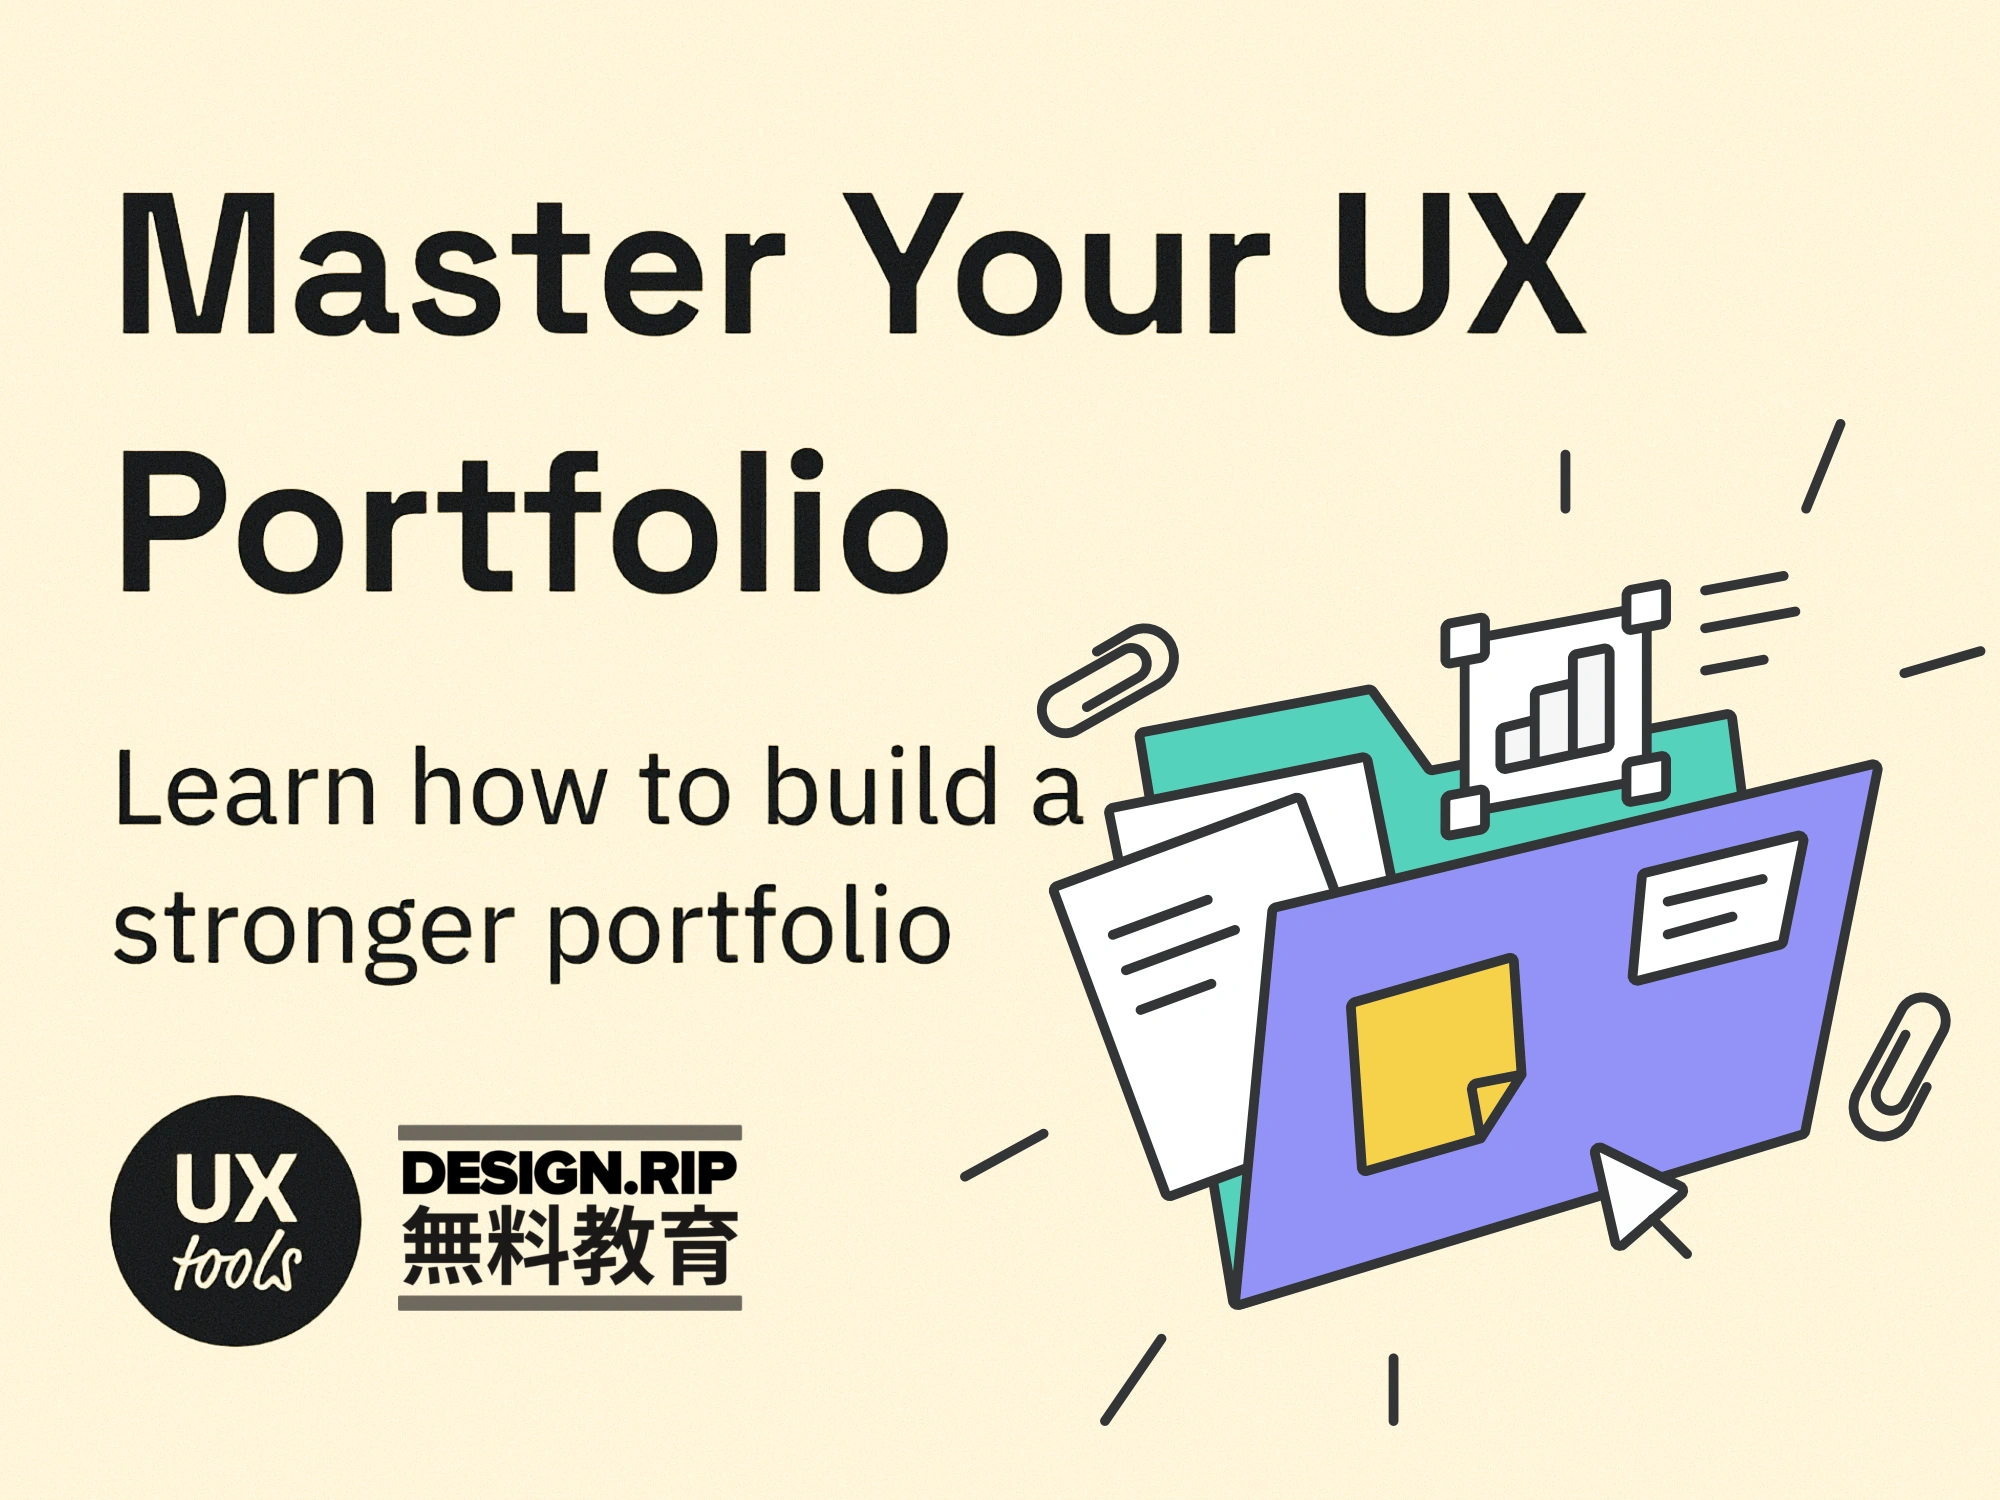 [VIP] UX Tools: Master Your UX Portfolio - Build a stronger UX portfolio